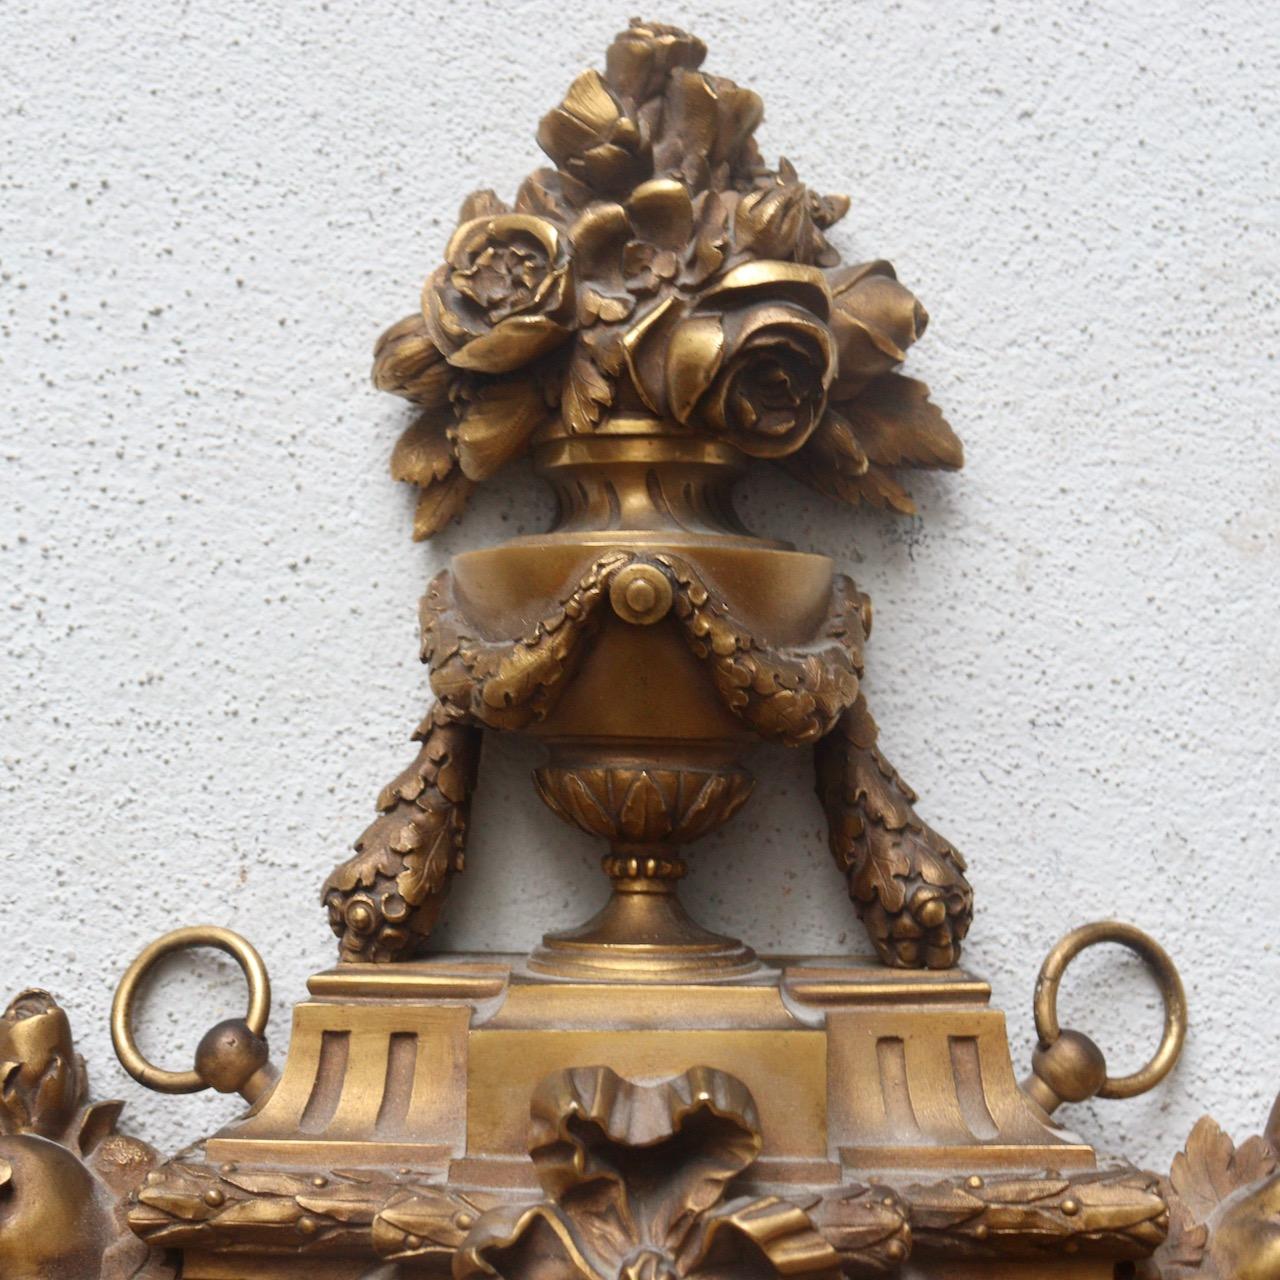 Ein französisches Füllhorn aus vergoldeter Bronze des 19. Jahrhunderts, von Susse Frères Paris

Ein Ormolu-Kartell in Form eines Wappenschildes, mit rundem weißem Email-Zifferblatt, signiert Susse Frères/A Paris, arabische Ziffern für die Stunden